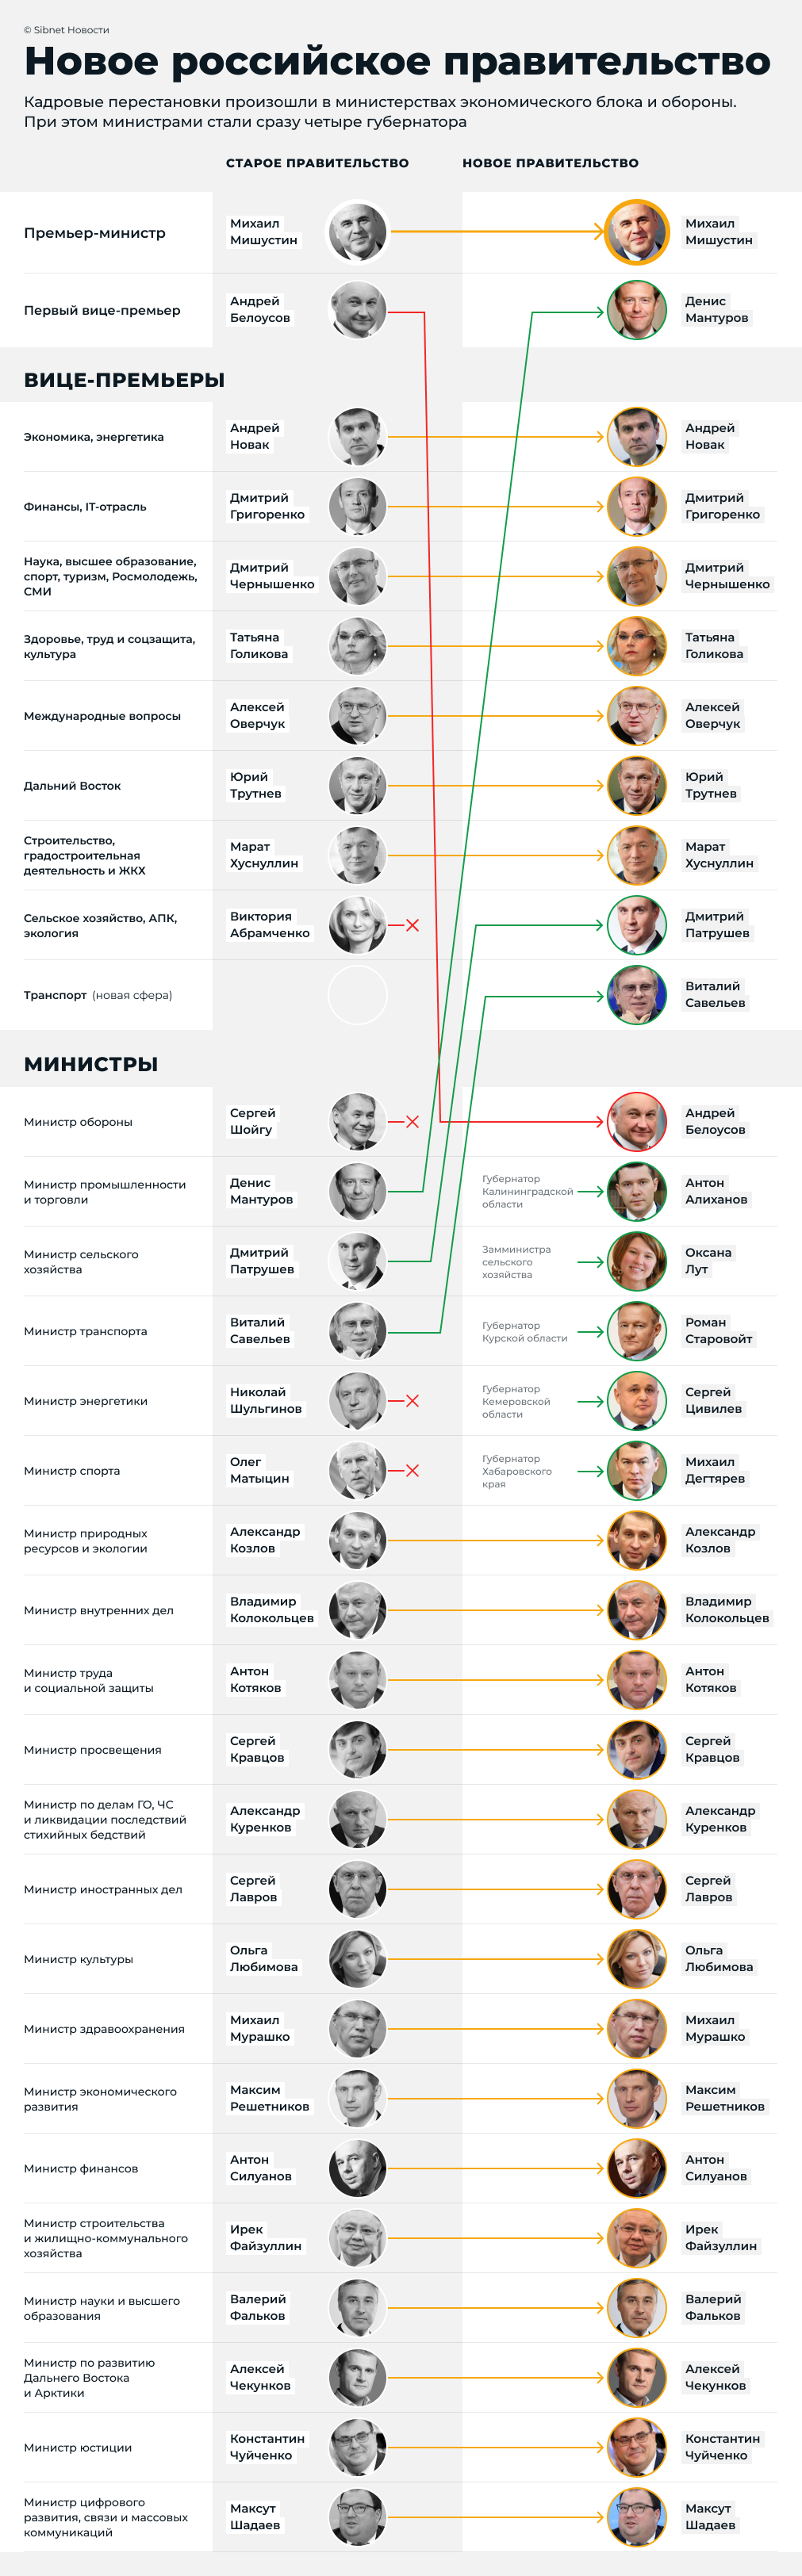 Состав нового правительства России